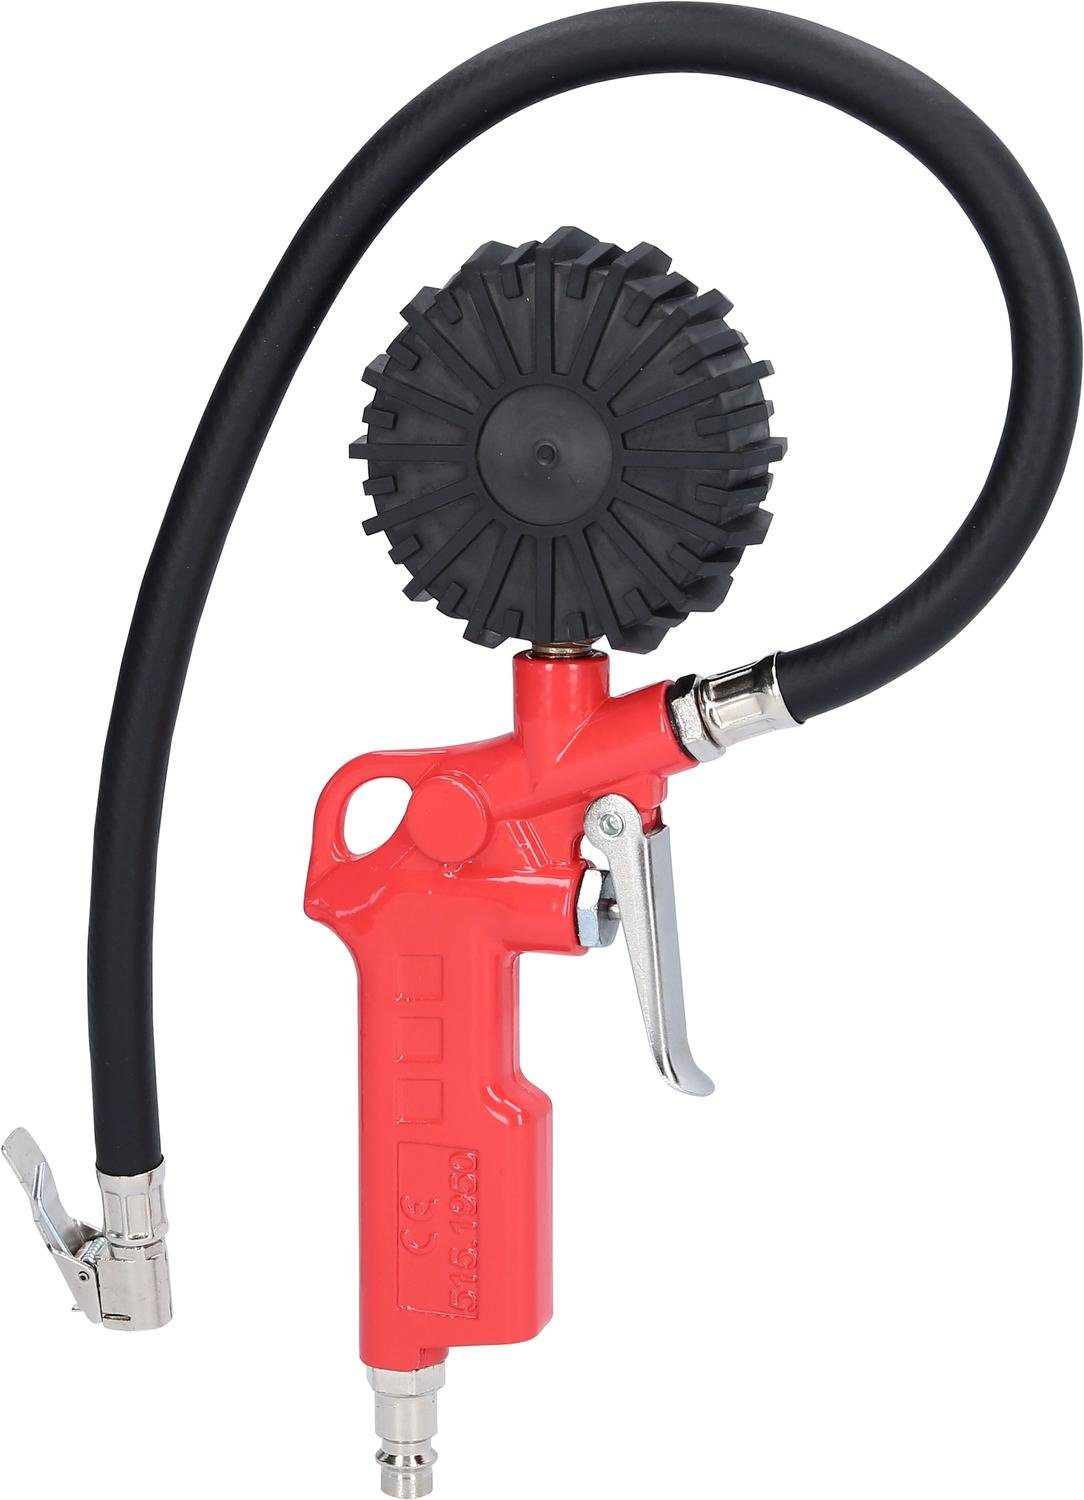 KS Druckluft-Reifenfüllmesser, 0-12bar Tools Reifenfüllmessgerät